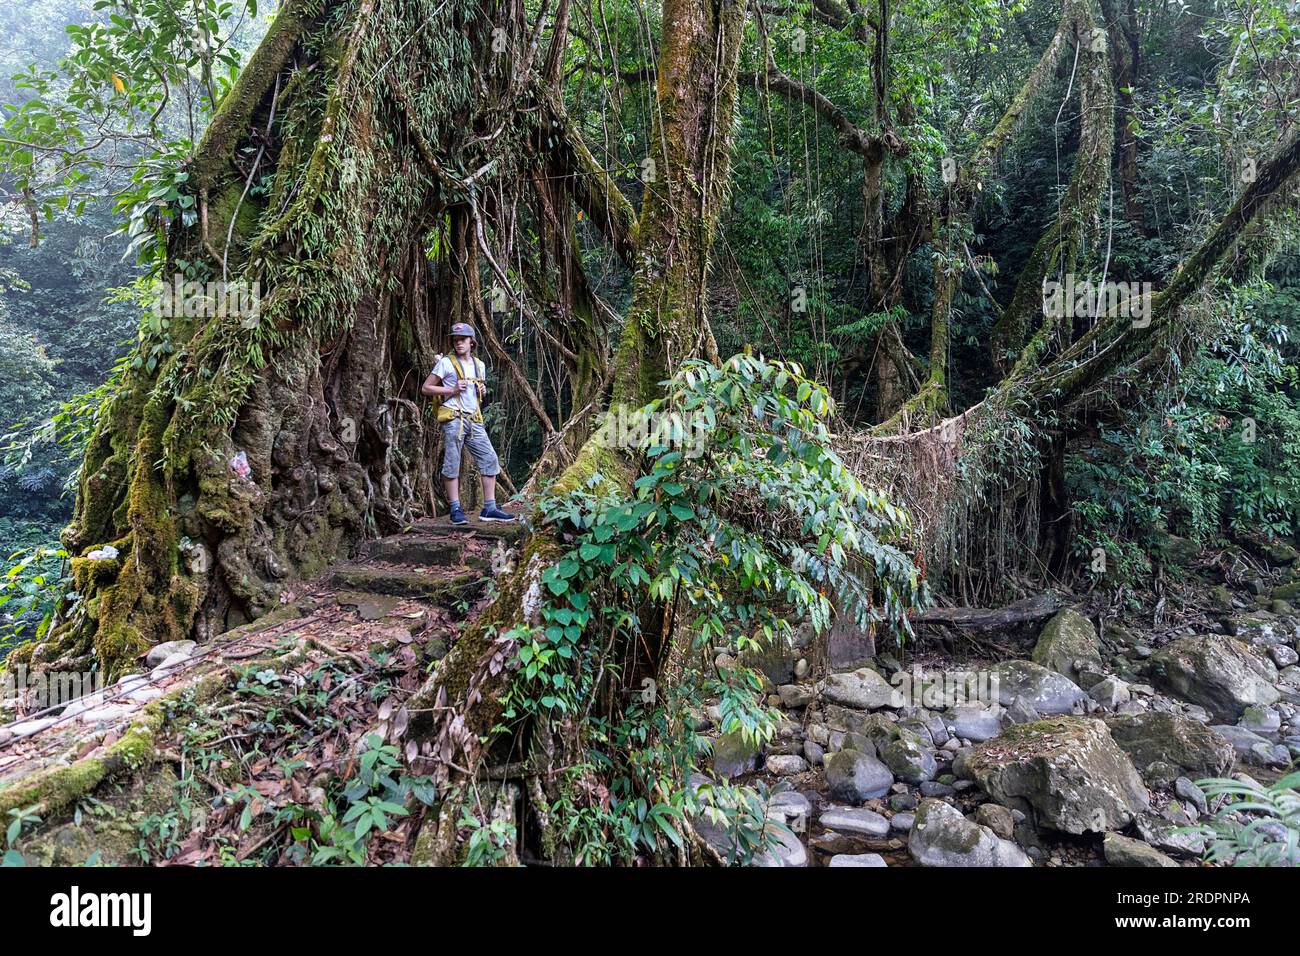 Touristenwandern auf einem Wanderweg zur Double Lane Living Root Bridge in der Nähe des Dorfes Padu, tief im Canyon, umgeben von tropischem Wald, Indien Stockfoto